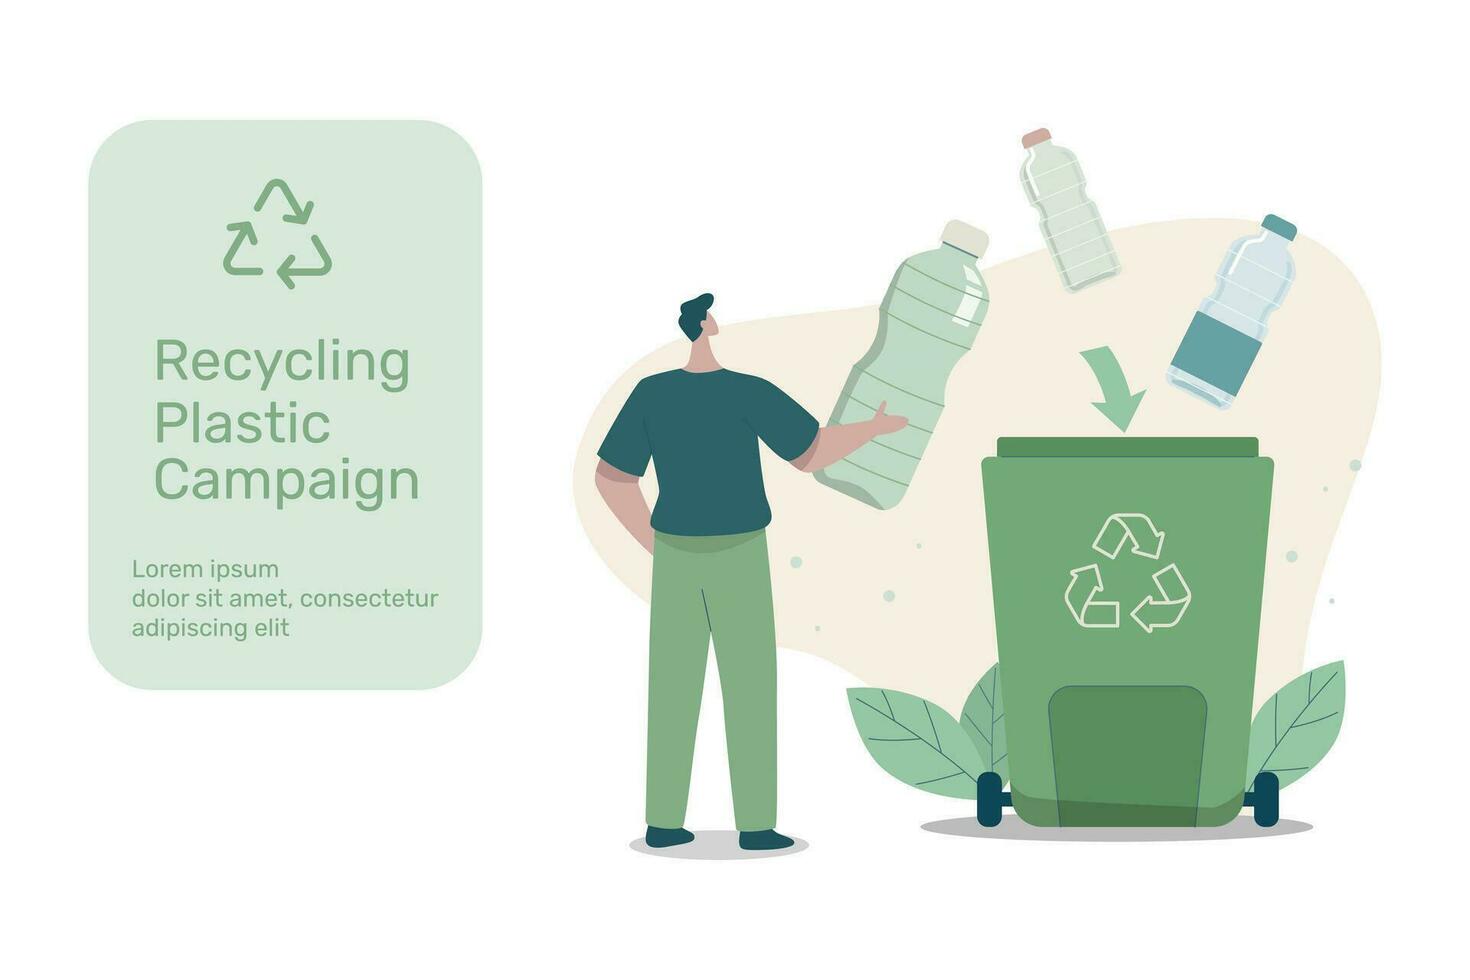 éco amical durable, recyclage Plastique campagne, personnages jeter Plastique bouteilles dans le recyclage poubelle, recycler, réduire, réutilisation, vecteur conception illustration.